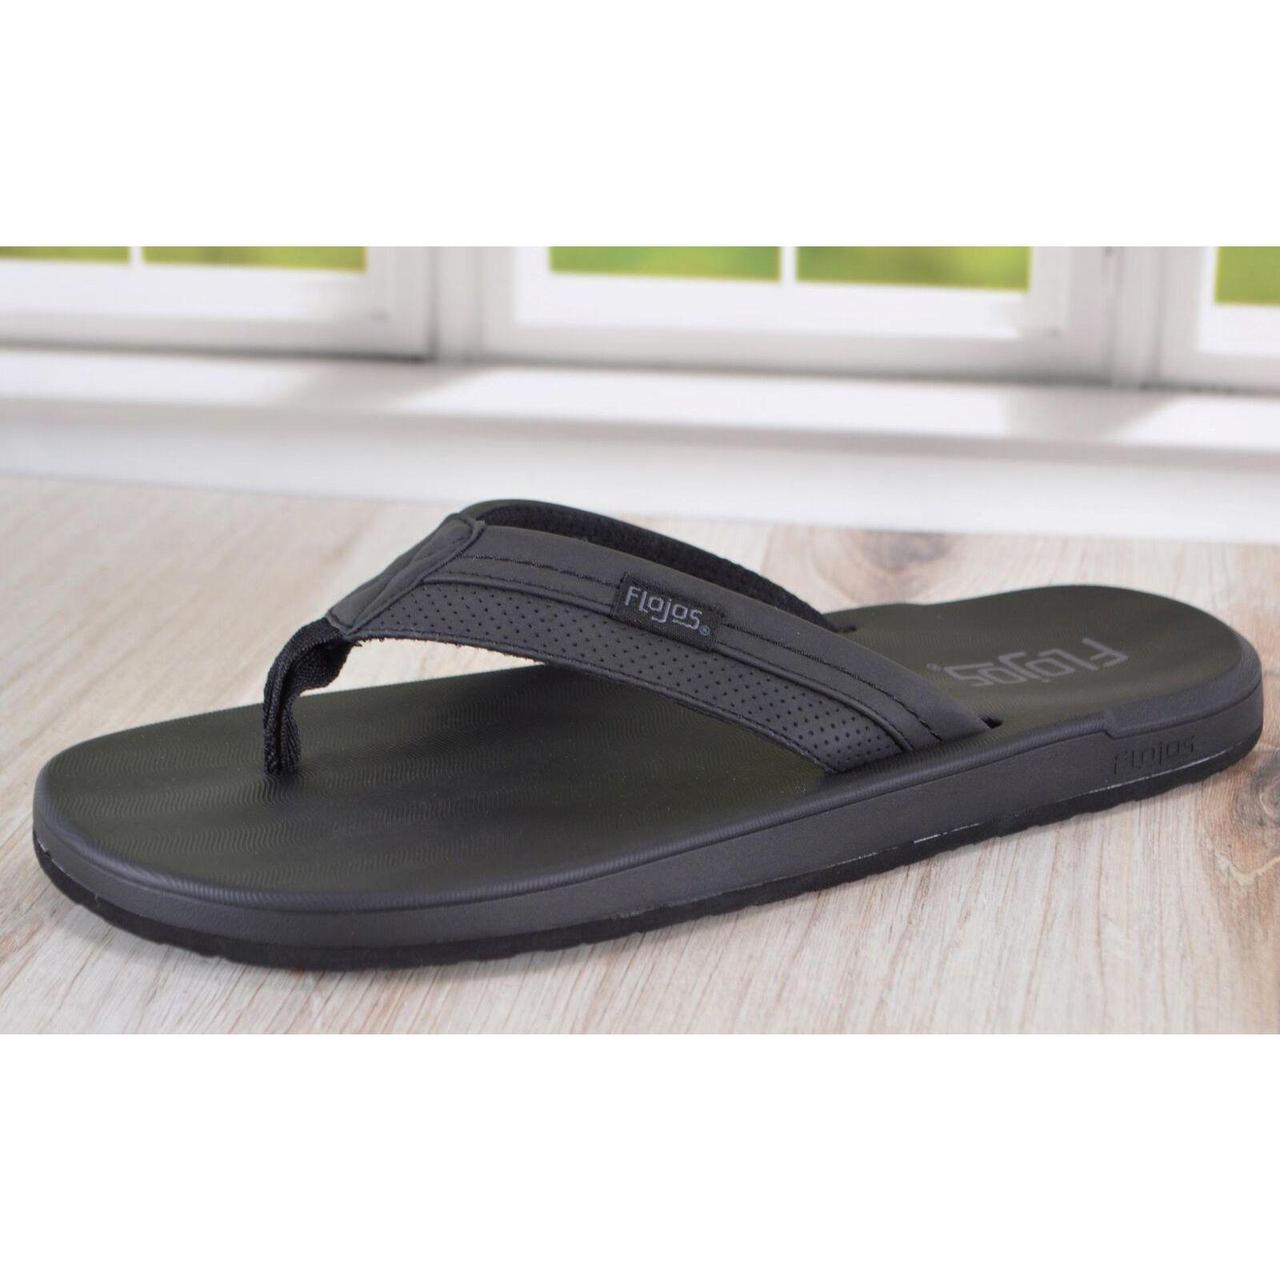 ON SALE! NEW Flojos Women's Memory Foam Flip Flop Sandals BLACK, PICK SIZE